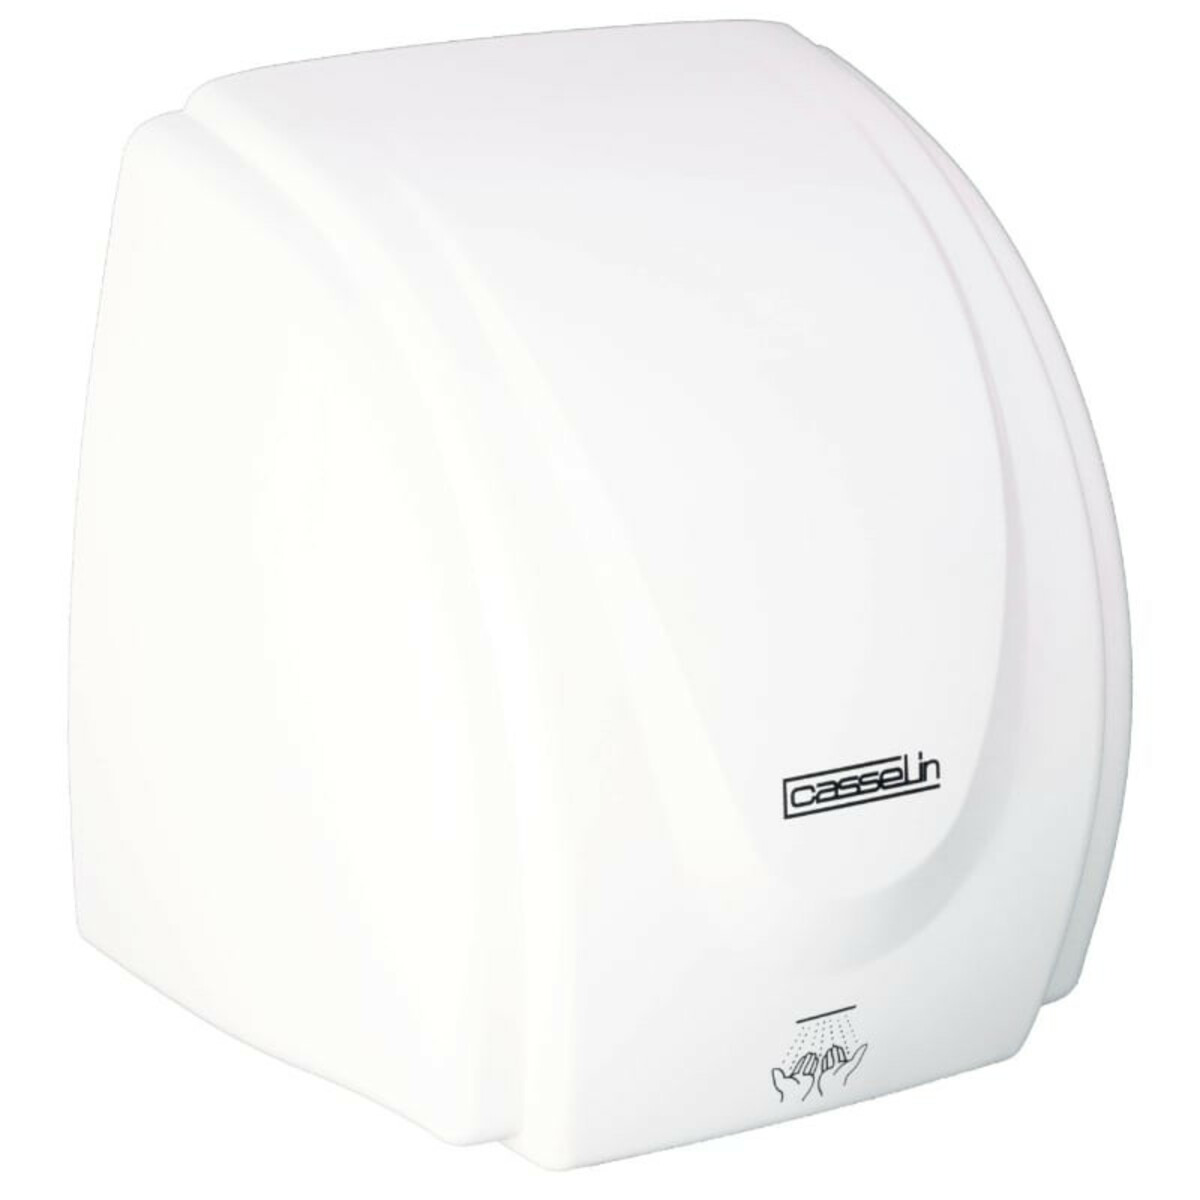 Sèche-mains Casselin CSM1 automatique en ABS blanc